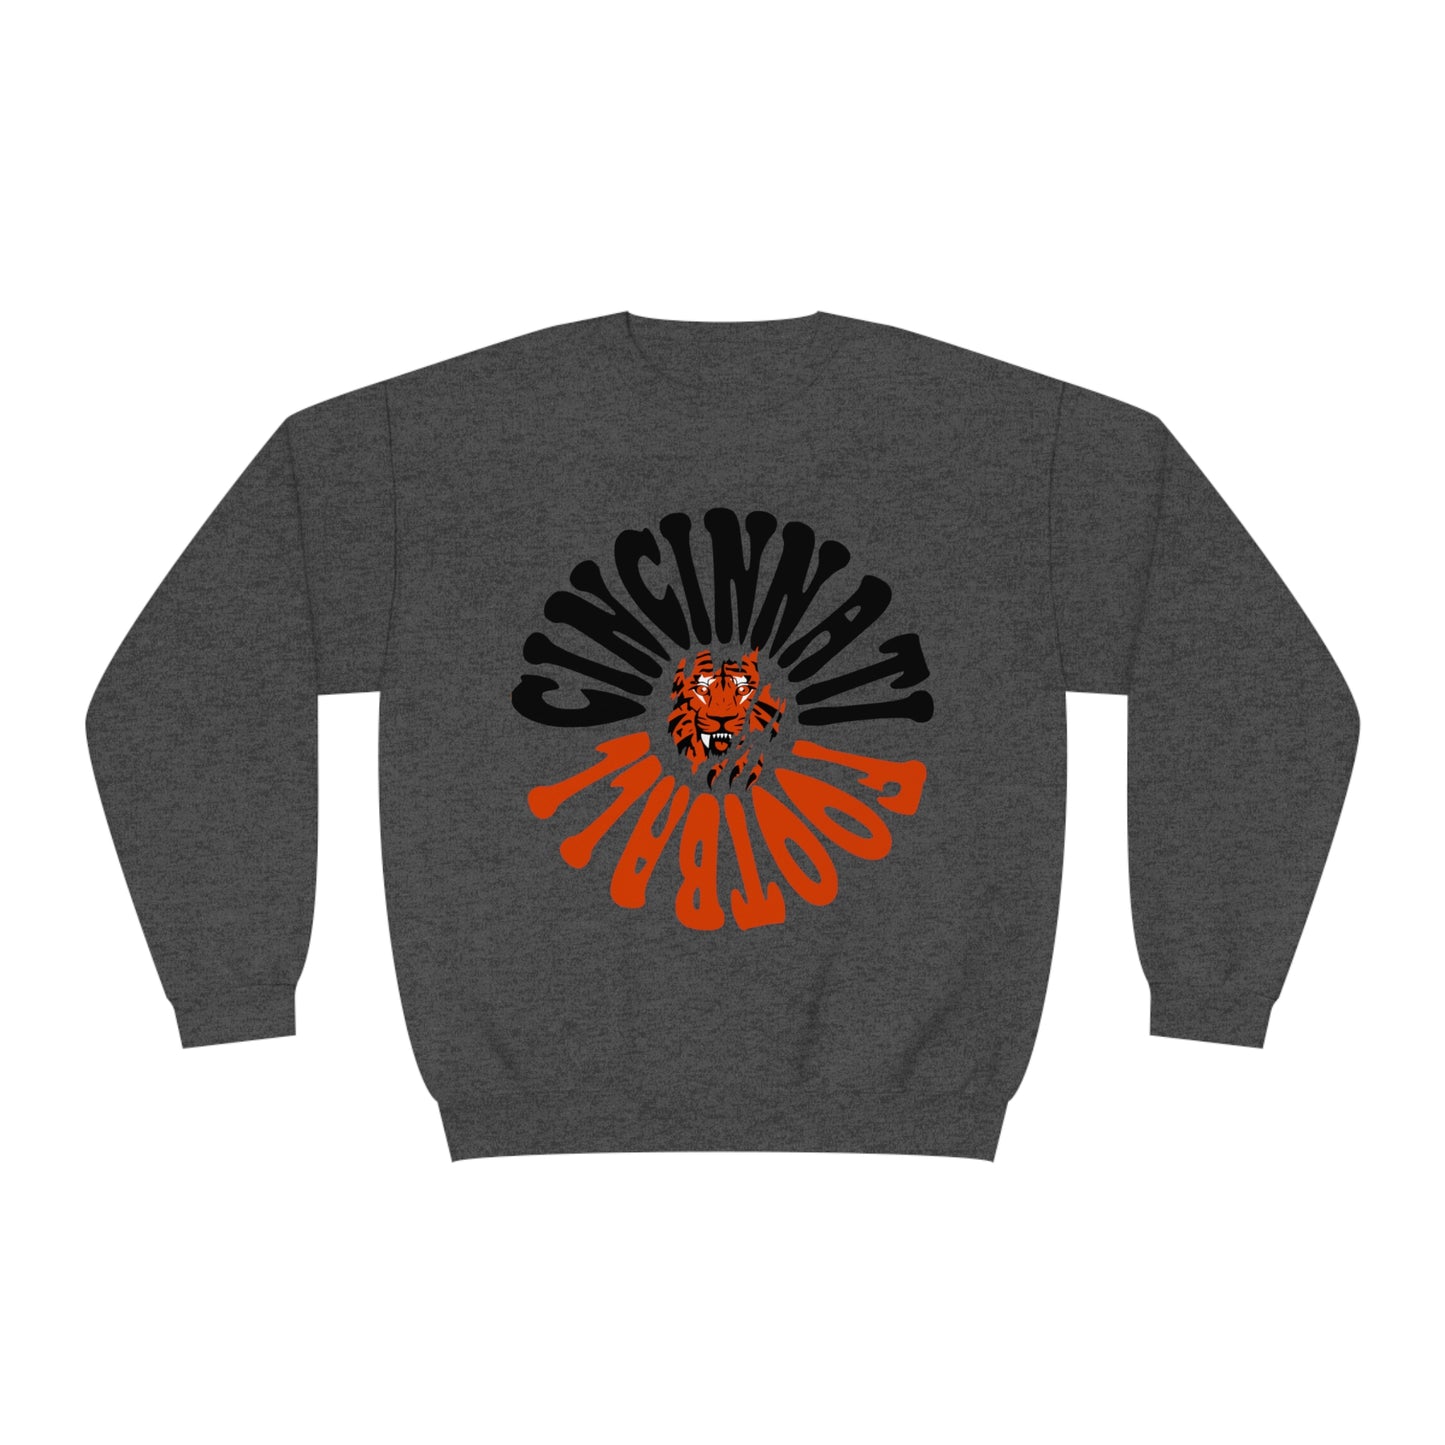 Cincinnati Bengals Crewneck Sweatshirt - Retro NFL Football Hoodie - Hippy Oversized Men's & Women's 90's Oversized - Design 2